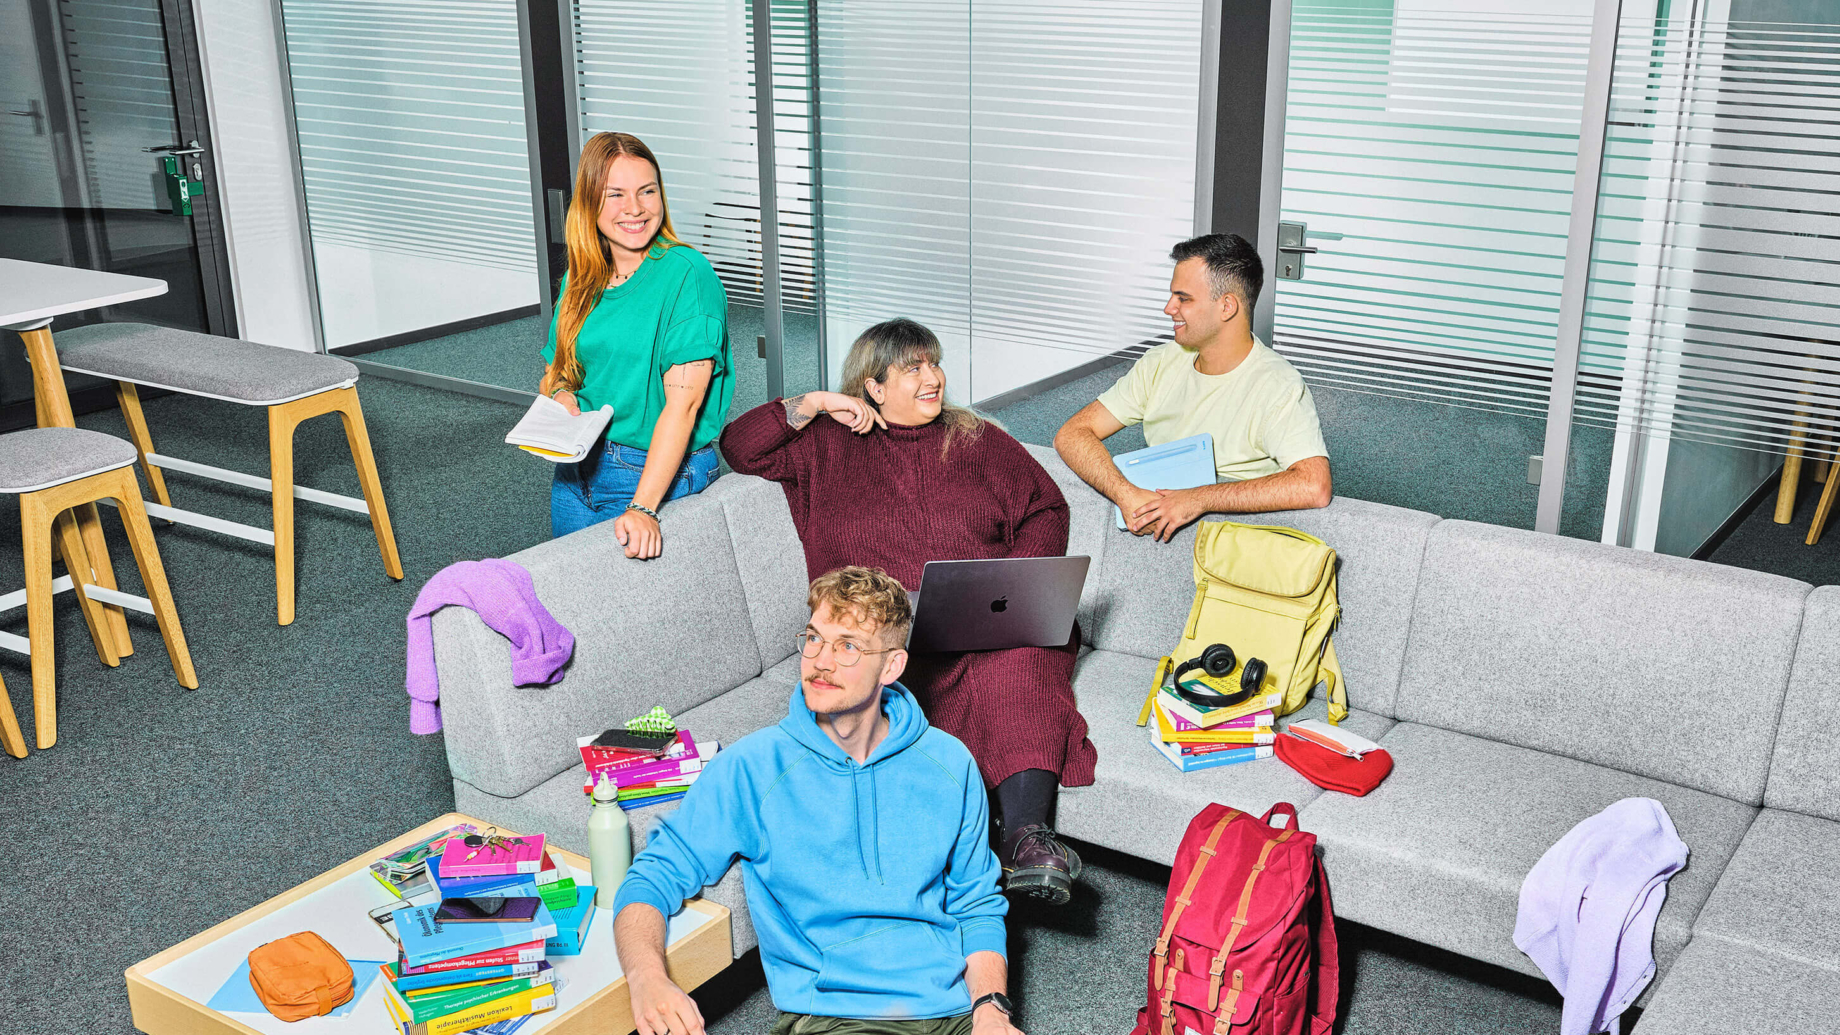 Das Bild zeigt 4 Studierende im Selbstlernzentrum. Im Fokus steht eine graue Eck-Couch auf der eine Frau in einem roten Kleid sitzt. Sie hat einen Laptop auf den Knien und unterhält sich mit einem Studenten, der rechts hinter der Couch kniet. Er trägt ein gelbes T-Shirt und hält ein Tablet in den Händen. Links von der Frau im roten Kleid steht eine Frau mit einem Buch in der Hand. Vor der Couch auf dem Boden sitzt ein Mann in hellblauem Hoodie mit einem Laptop auf dem Schoß. Sein Arm ist auf einen Beistelltisch gestützt, auf dem viele bunte Bücher liegen.